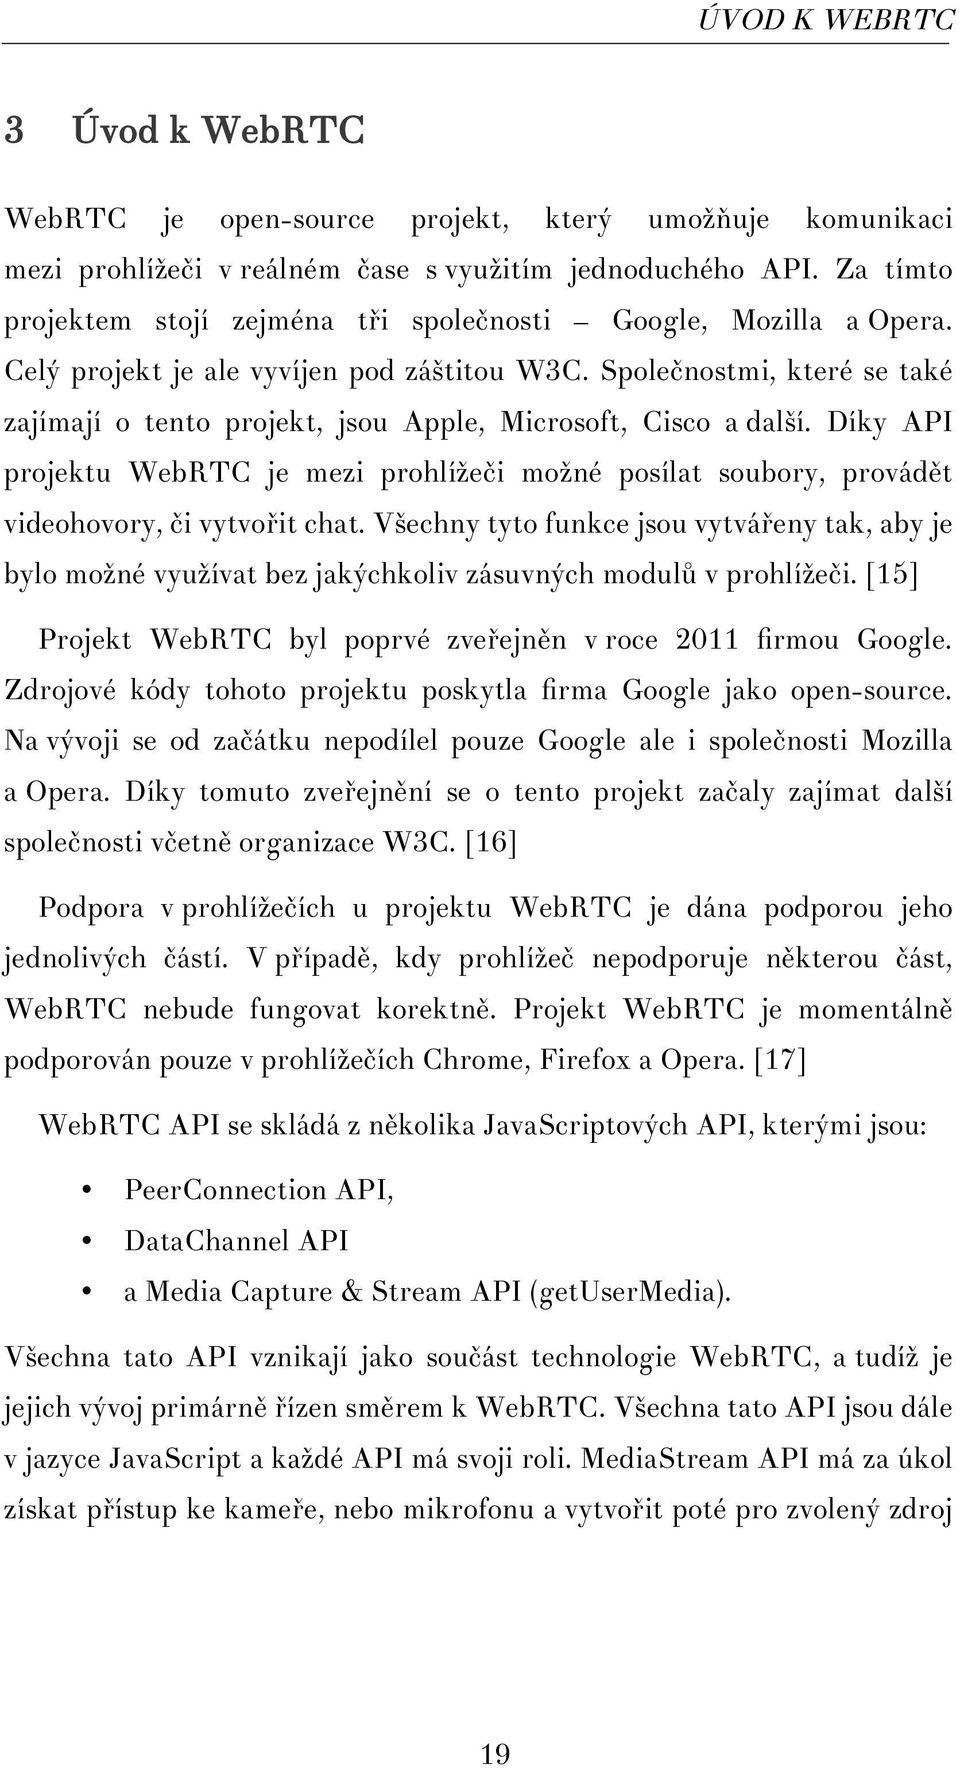 HTML5, getusermedia a jeho využití pro práci s kamerou - PDF Free Download